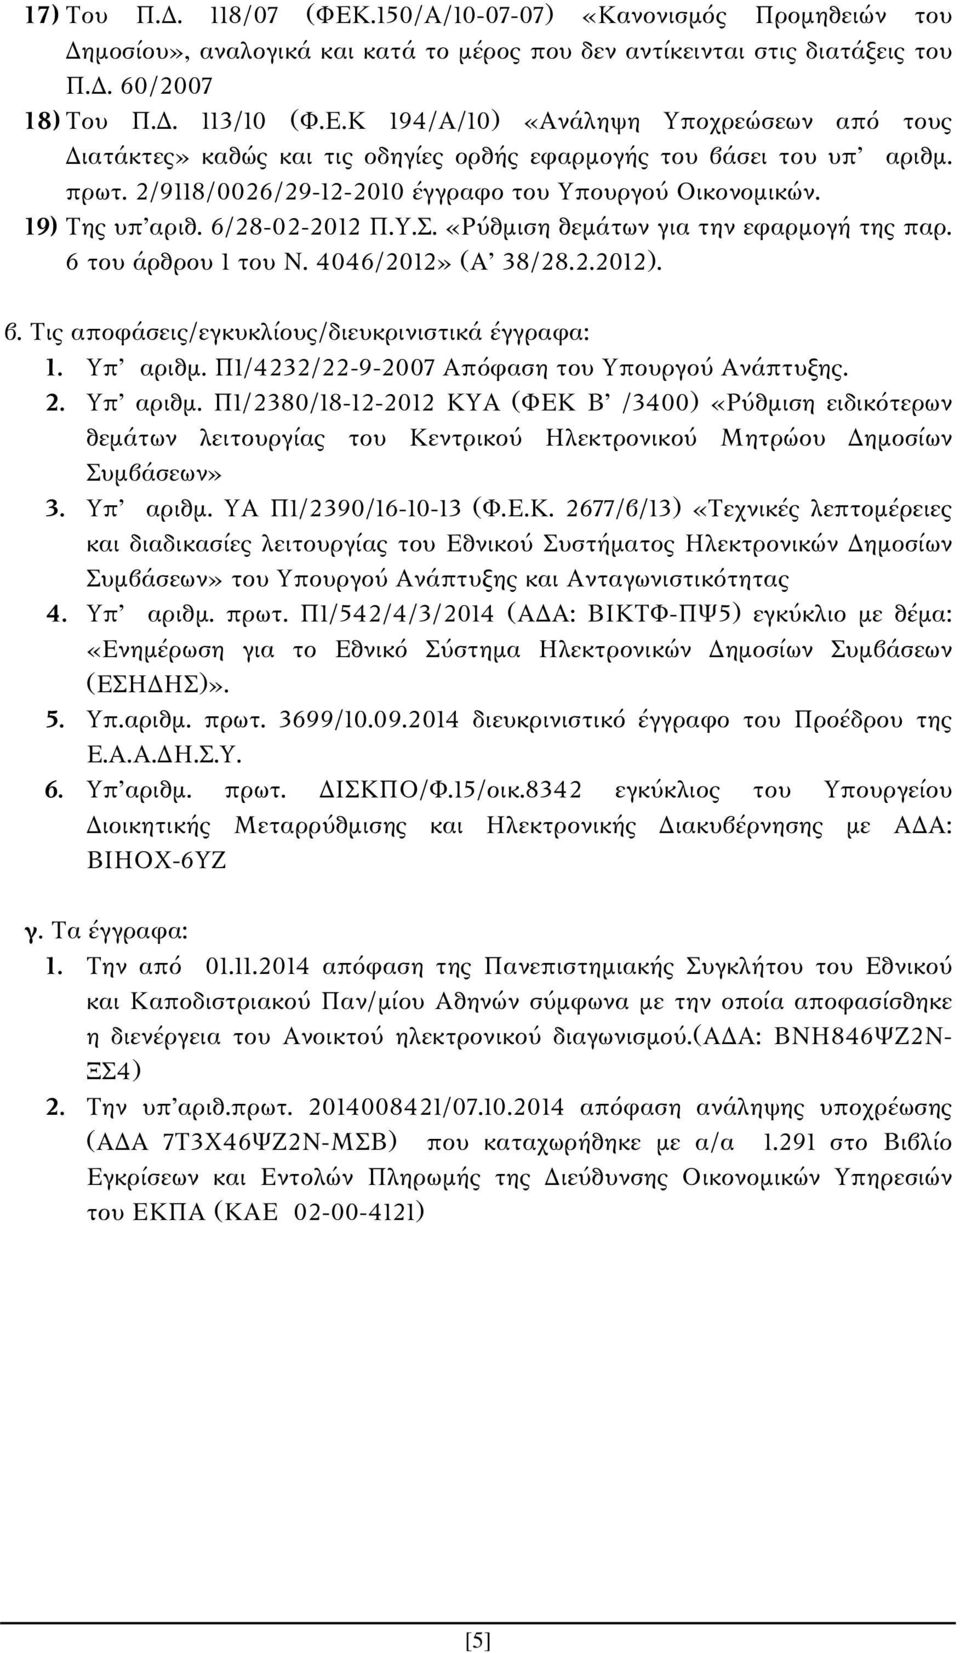 Τις αποφάσεις/εγκυκλίους/διευκρινιστικά έγγραφα: 1. Υπ αριθμ. Π1/4232/22-9-2007 Απόφαση του Υπουργού Ανάπτυξης. 2. Υπ αριθμ. Π1/2380/18-12-2012 ΚΥΑ (ΦEK B /3400) «Ρύθμιση ειδικότερων θεμάτων λειτουργίας του Κεντρικού Ηλεκτρονικού Μητρώου Δημοσίων Συμβάσεων» 3.